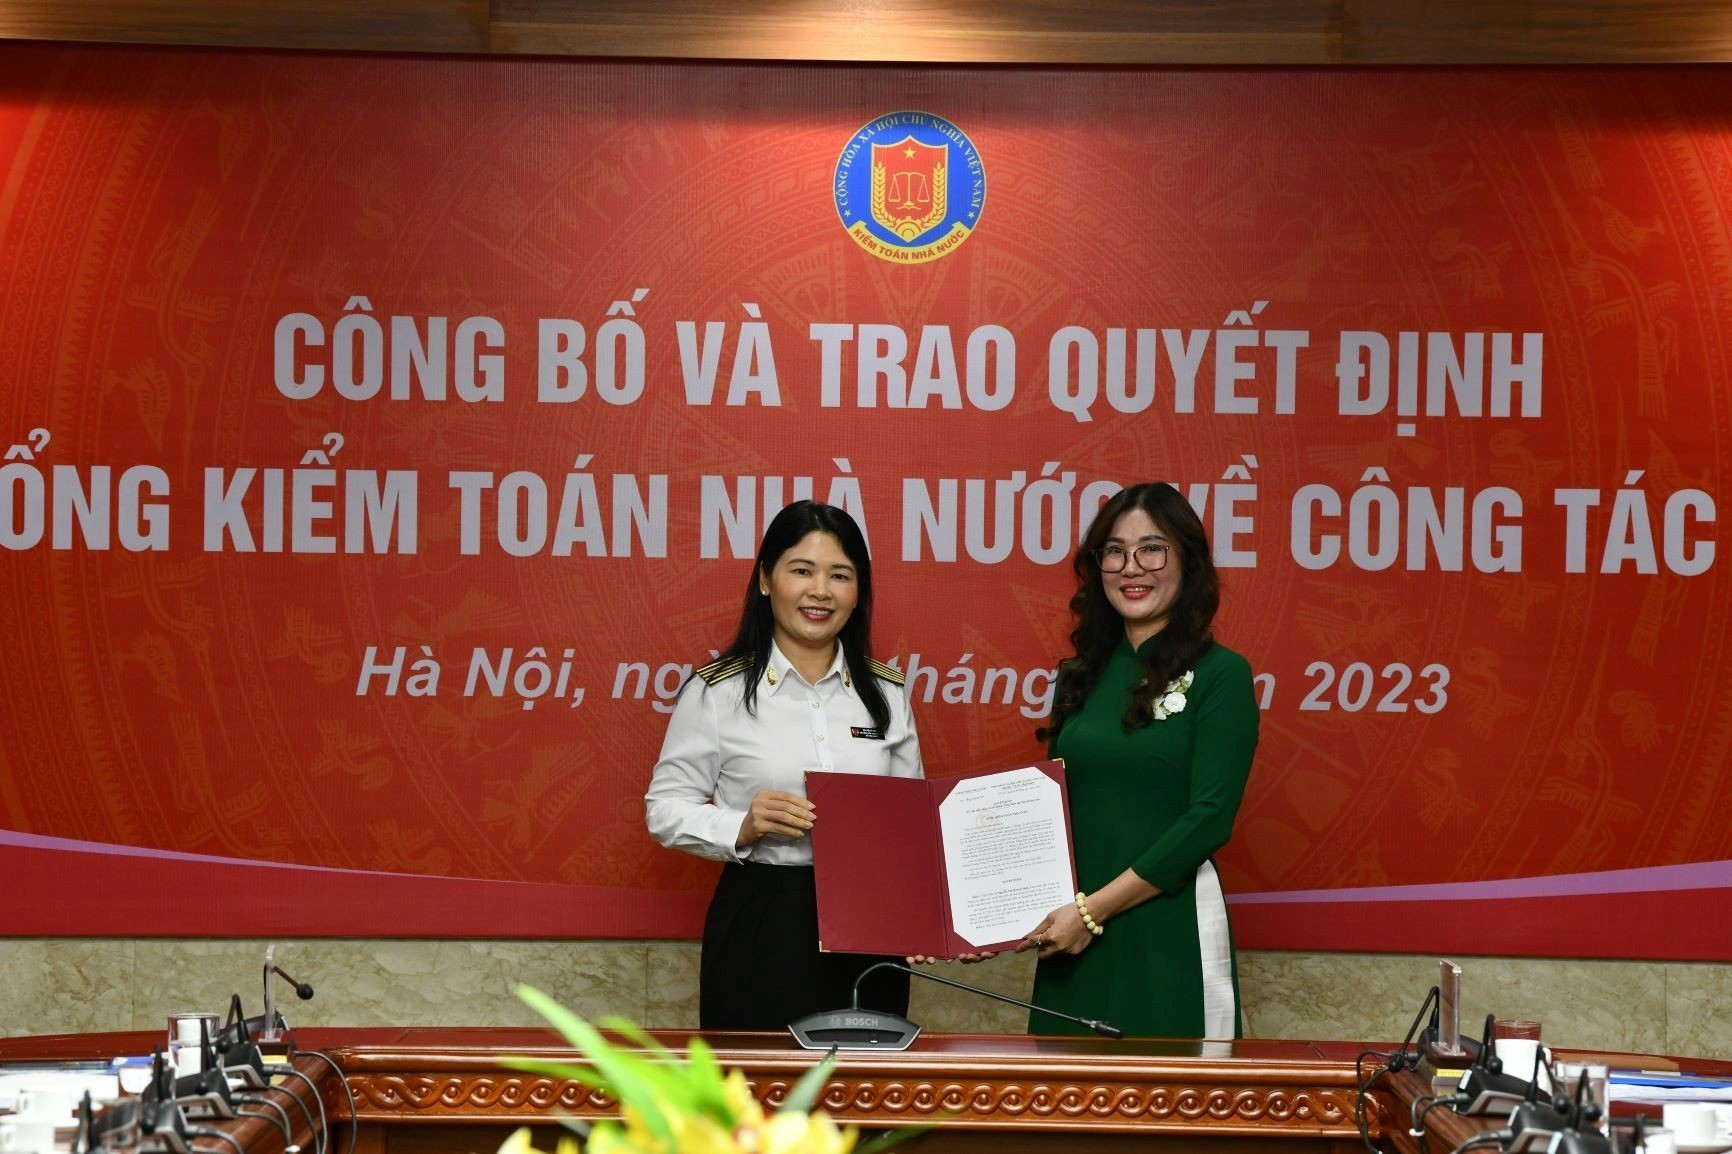 Nhà báo Nguyễn Thị Quỳnh Minh giữ chức Tổng biên tập Báo Kiểm toán